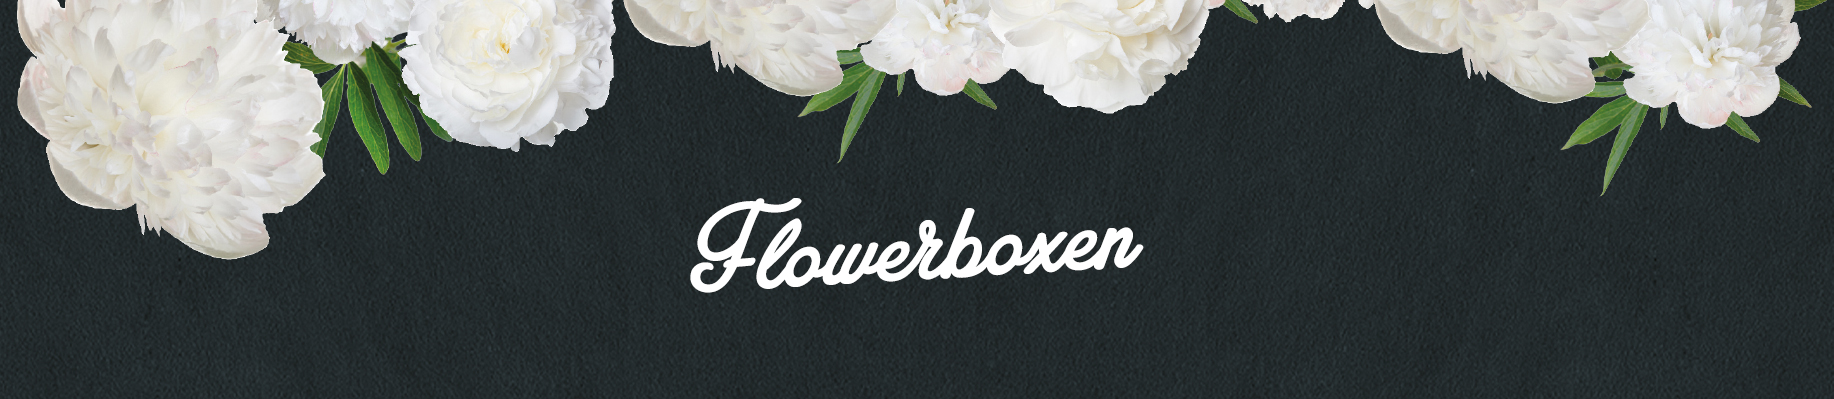 Zauberküche Flowerboxen. Einfach bestellen!